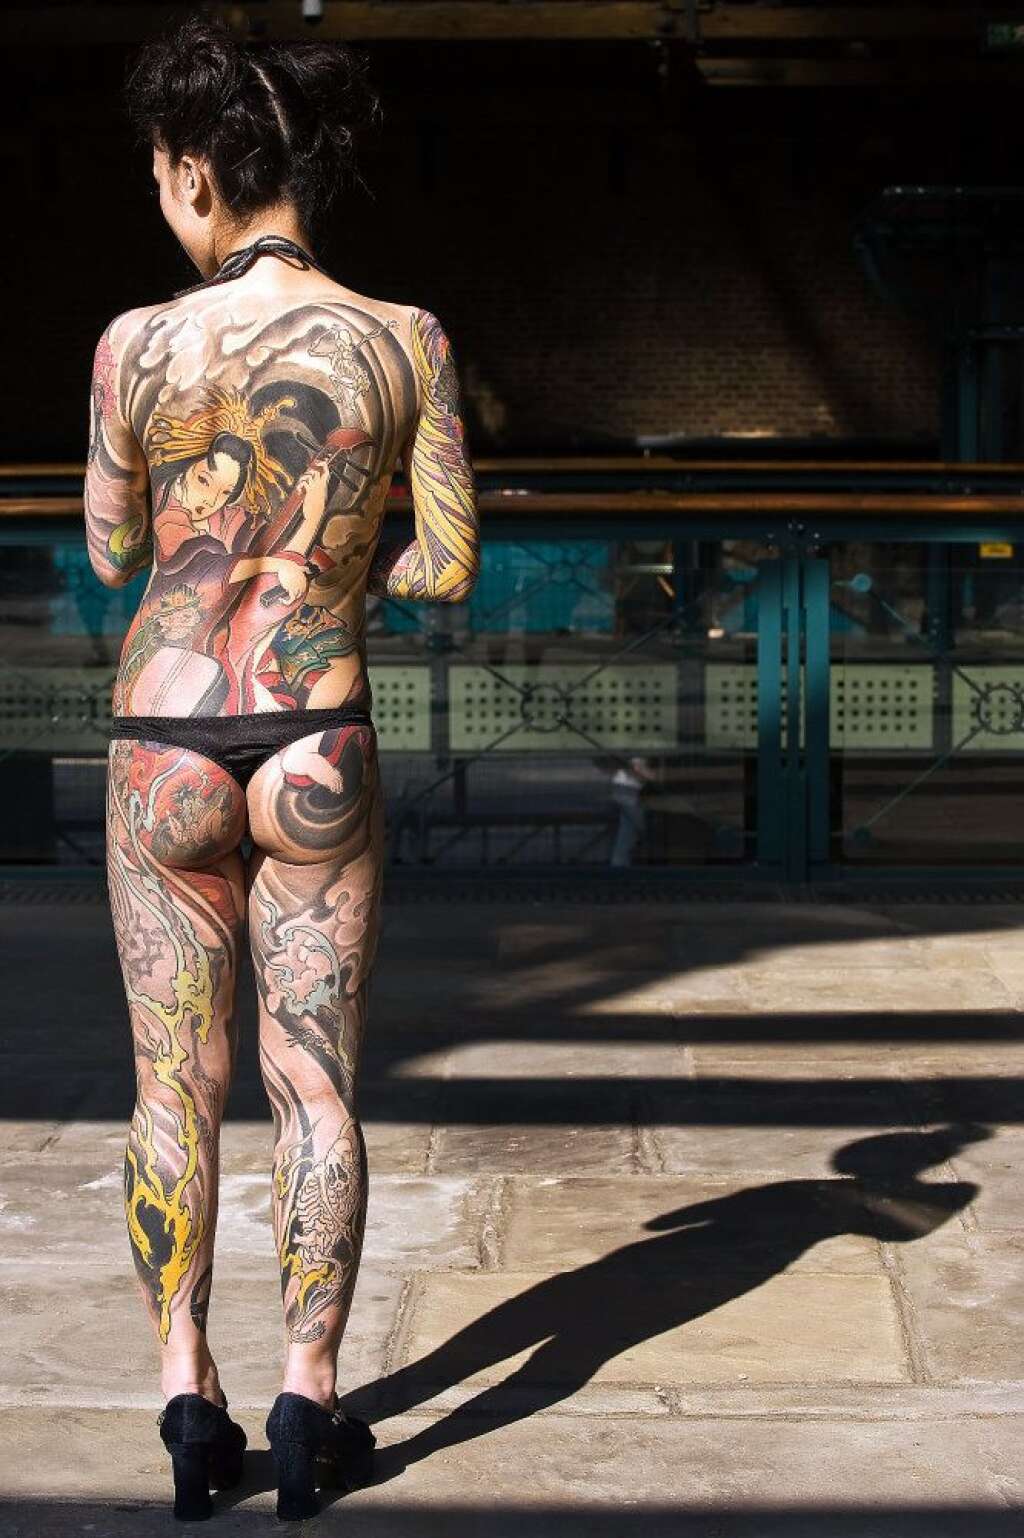 Les tatouages les plus fous - Convention internationale de Londres, septembre 2009.